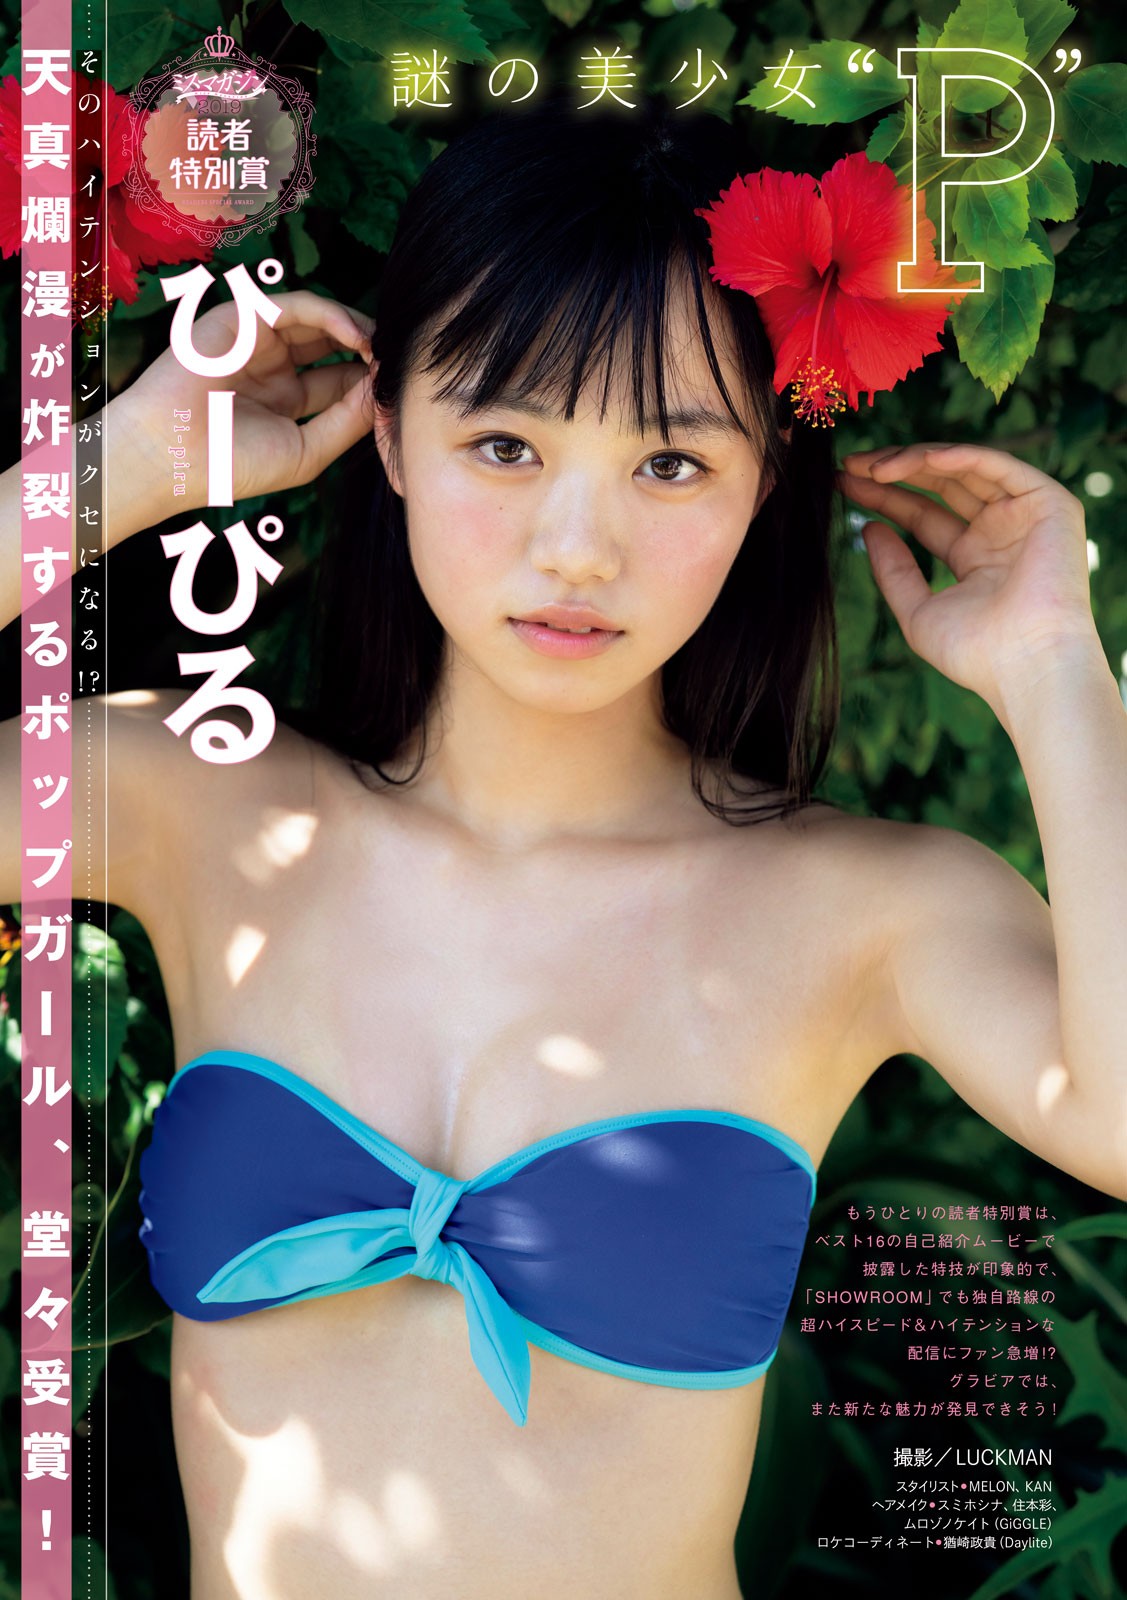 Miss Magazine 2019, Young Magazine 2019 No.35 (ヤングマガジン 2019年35号)